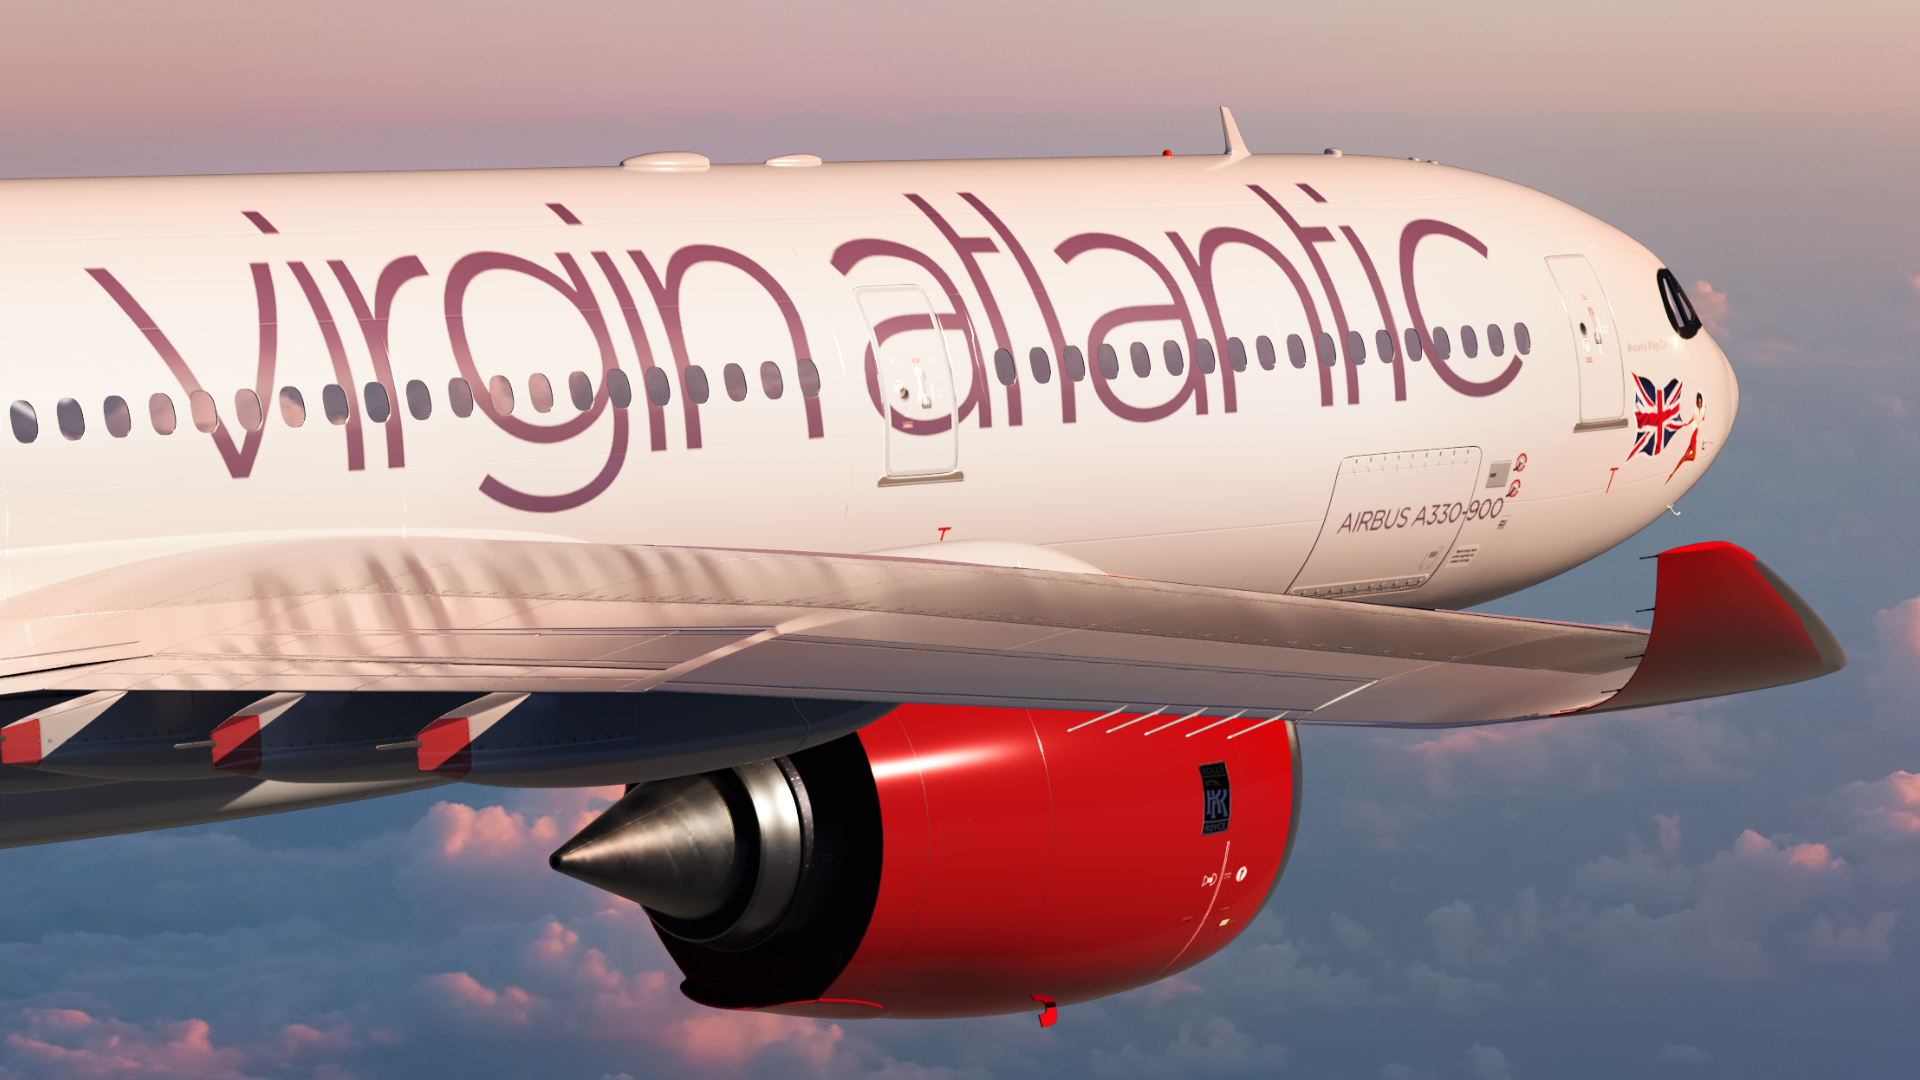 Sabena technics tillhandahåller basunderhåll i Bordeaux för Virgin Atlantic A330neo flygplan